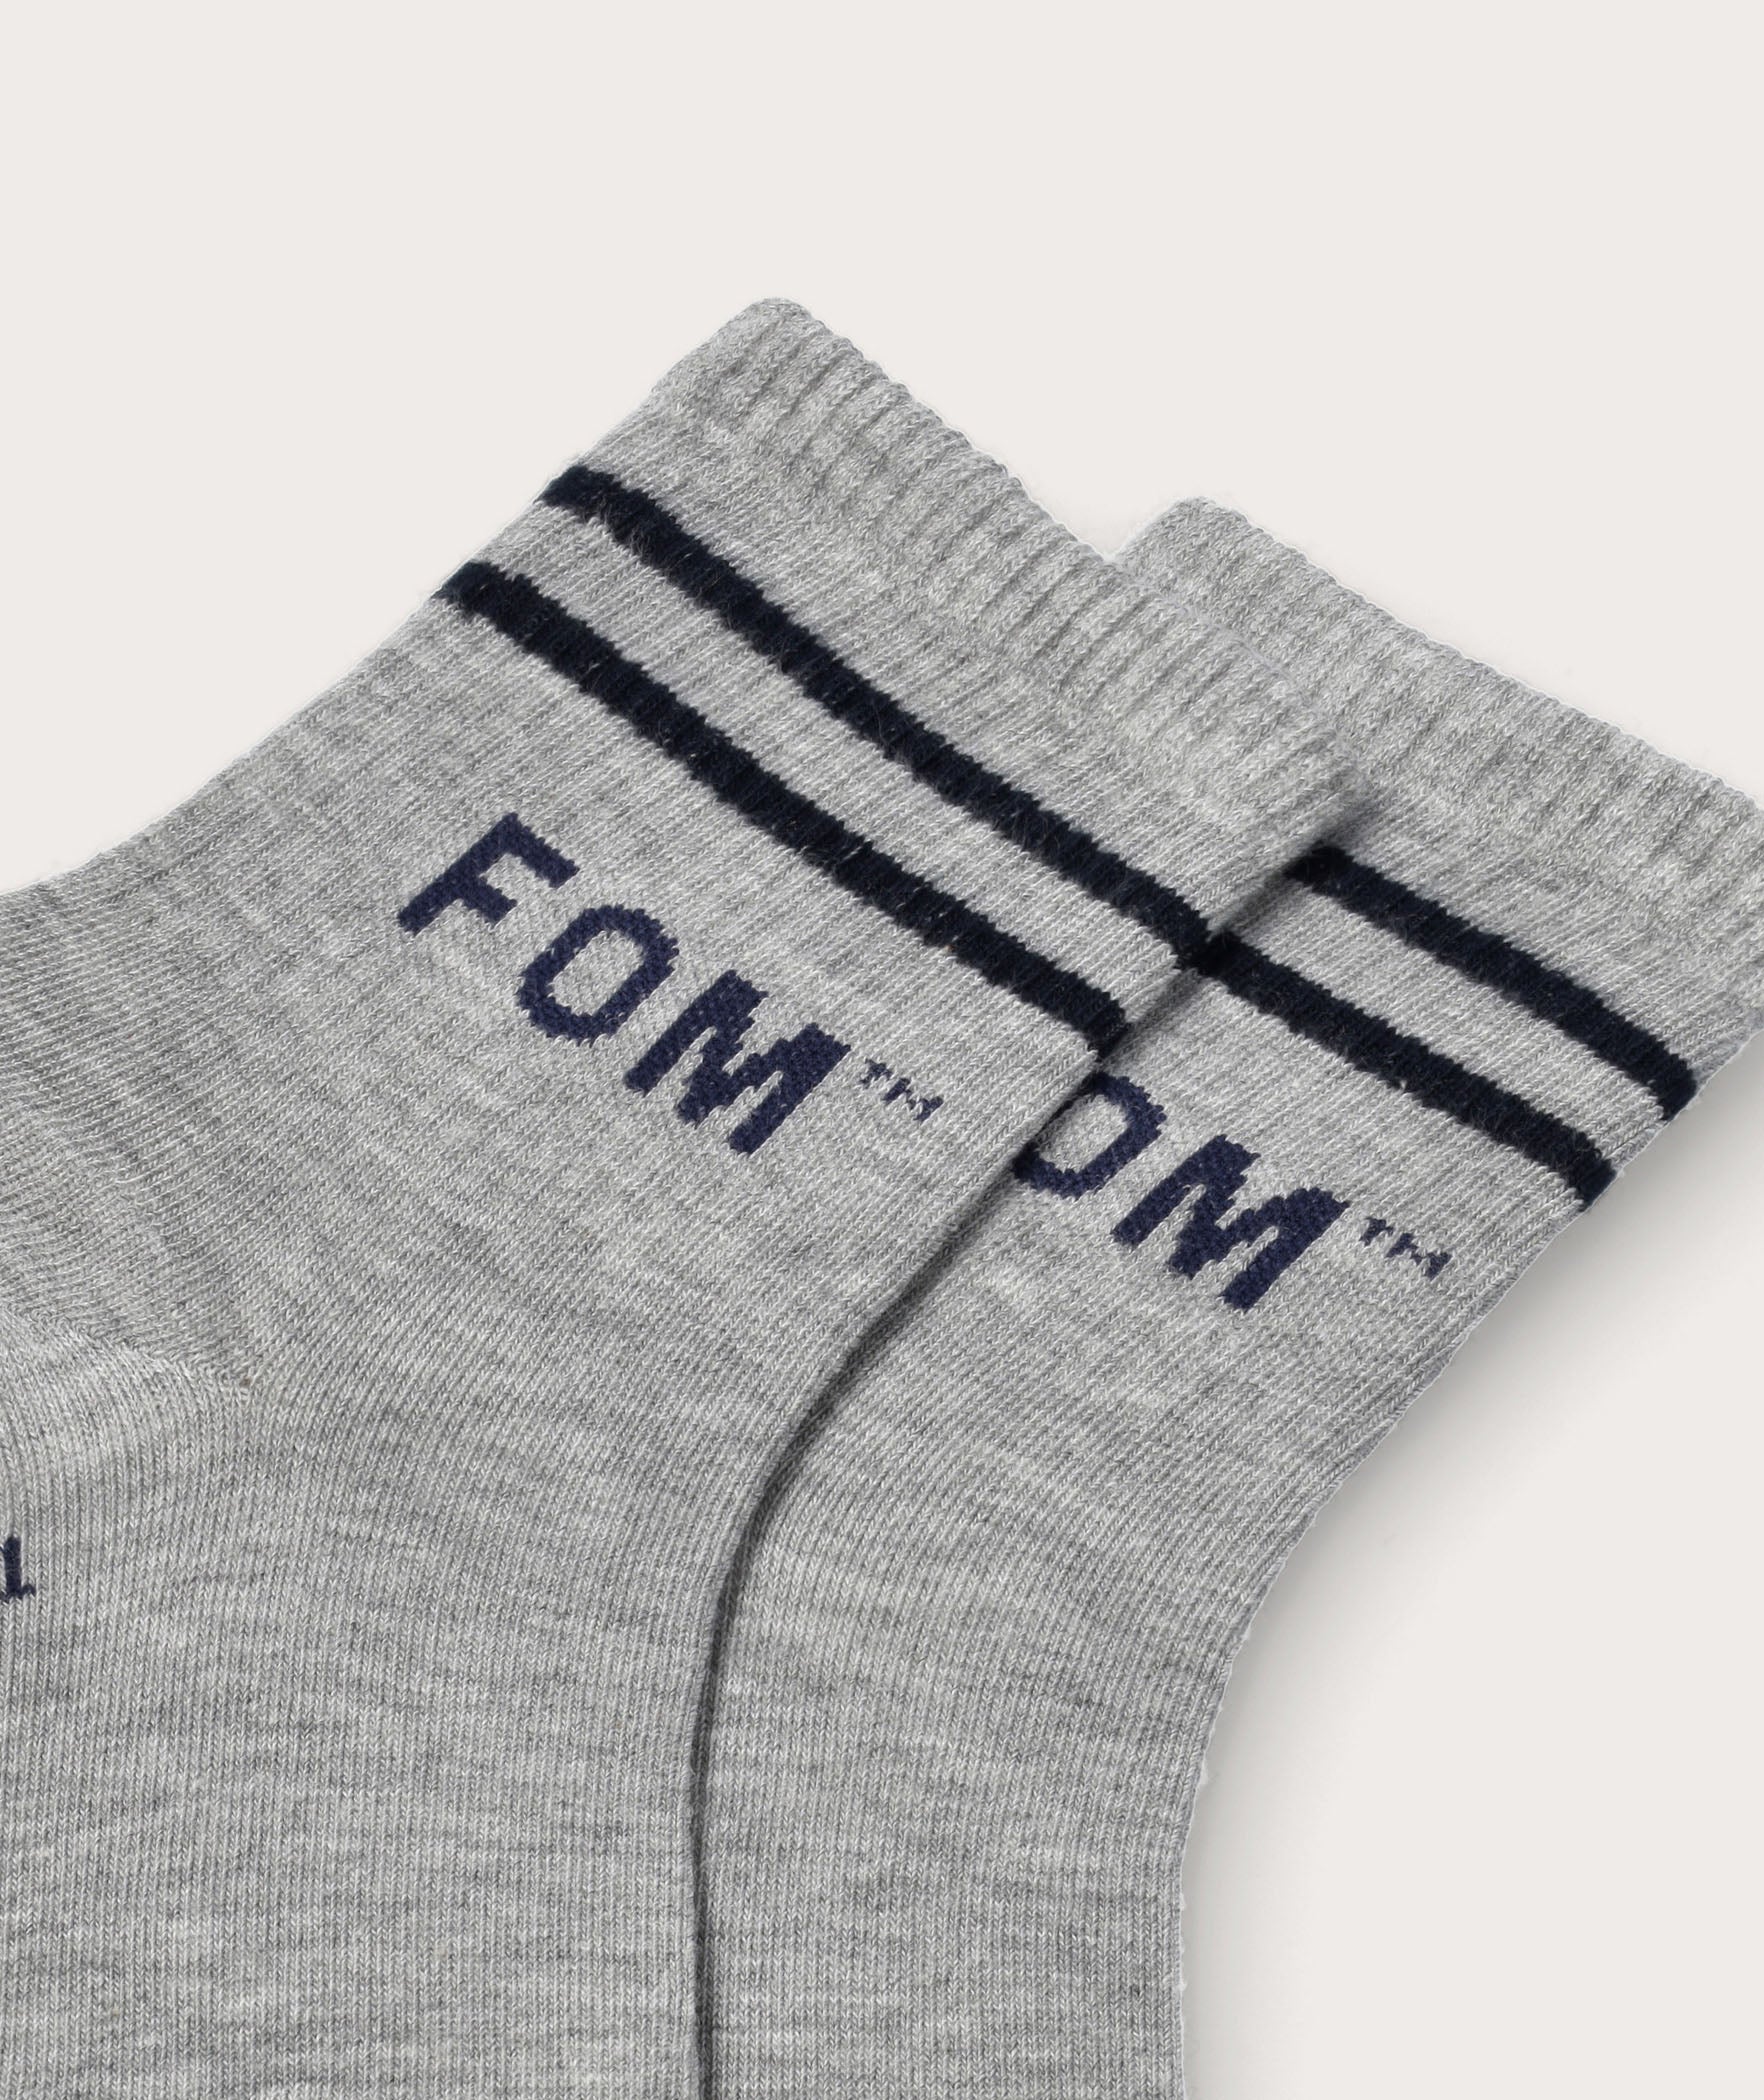 Socks FOM Active Grey/ Navy Stripes (Size 7-11)